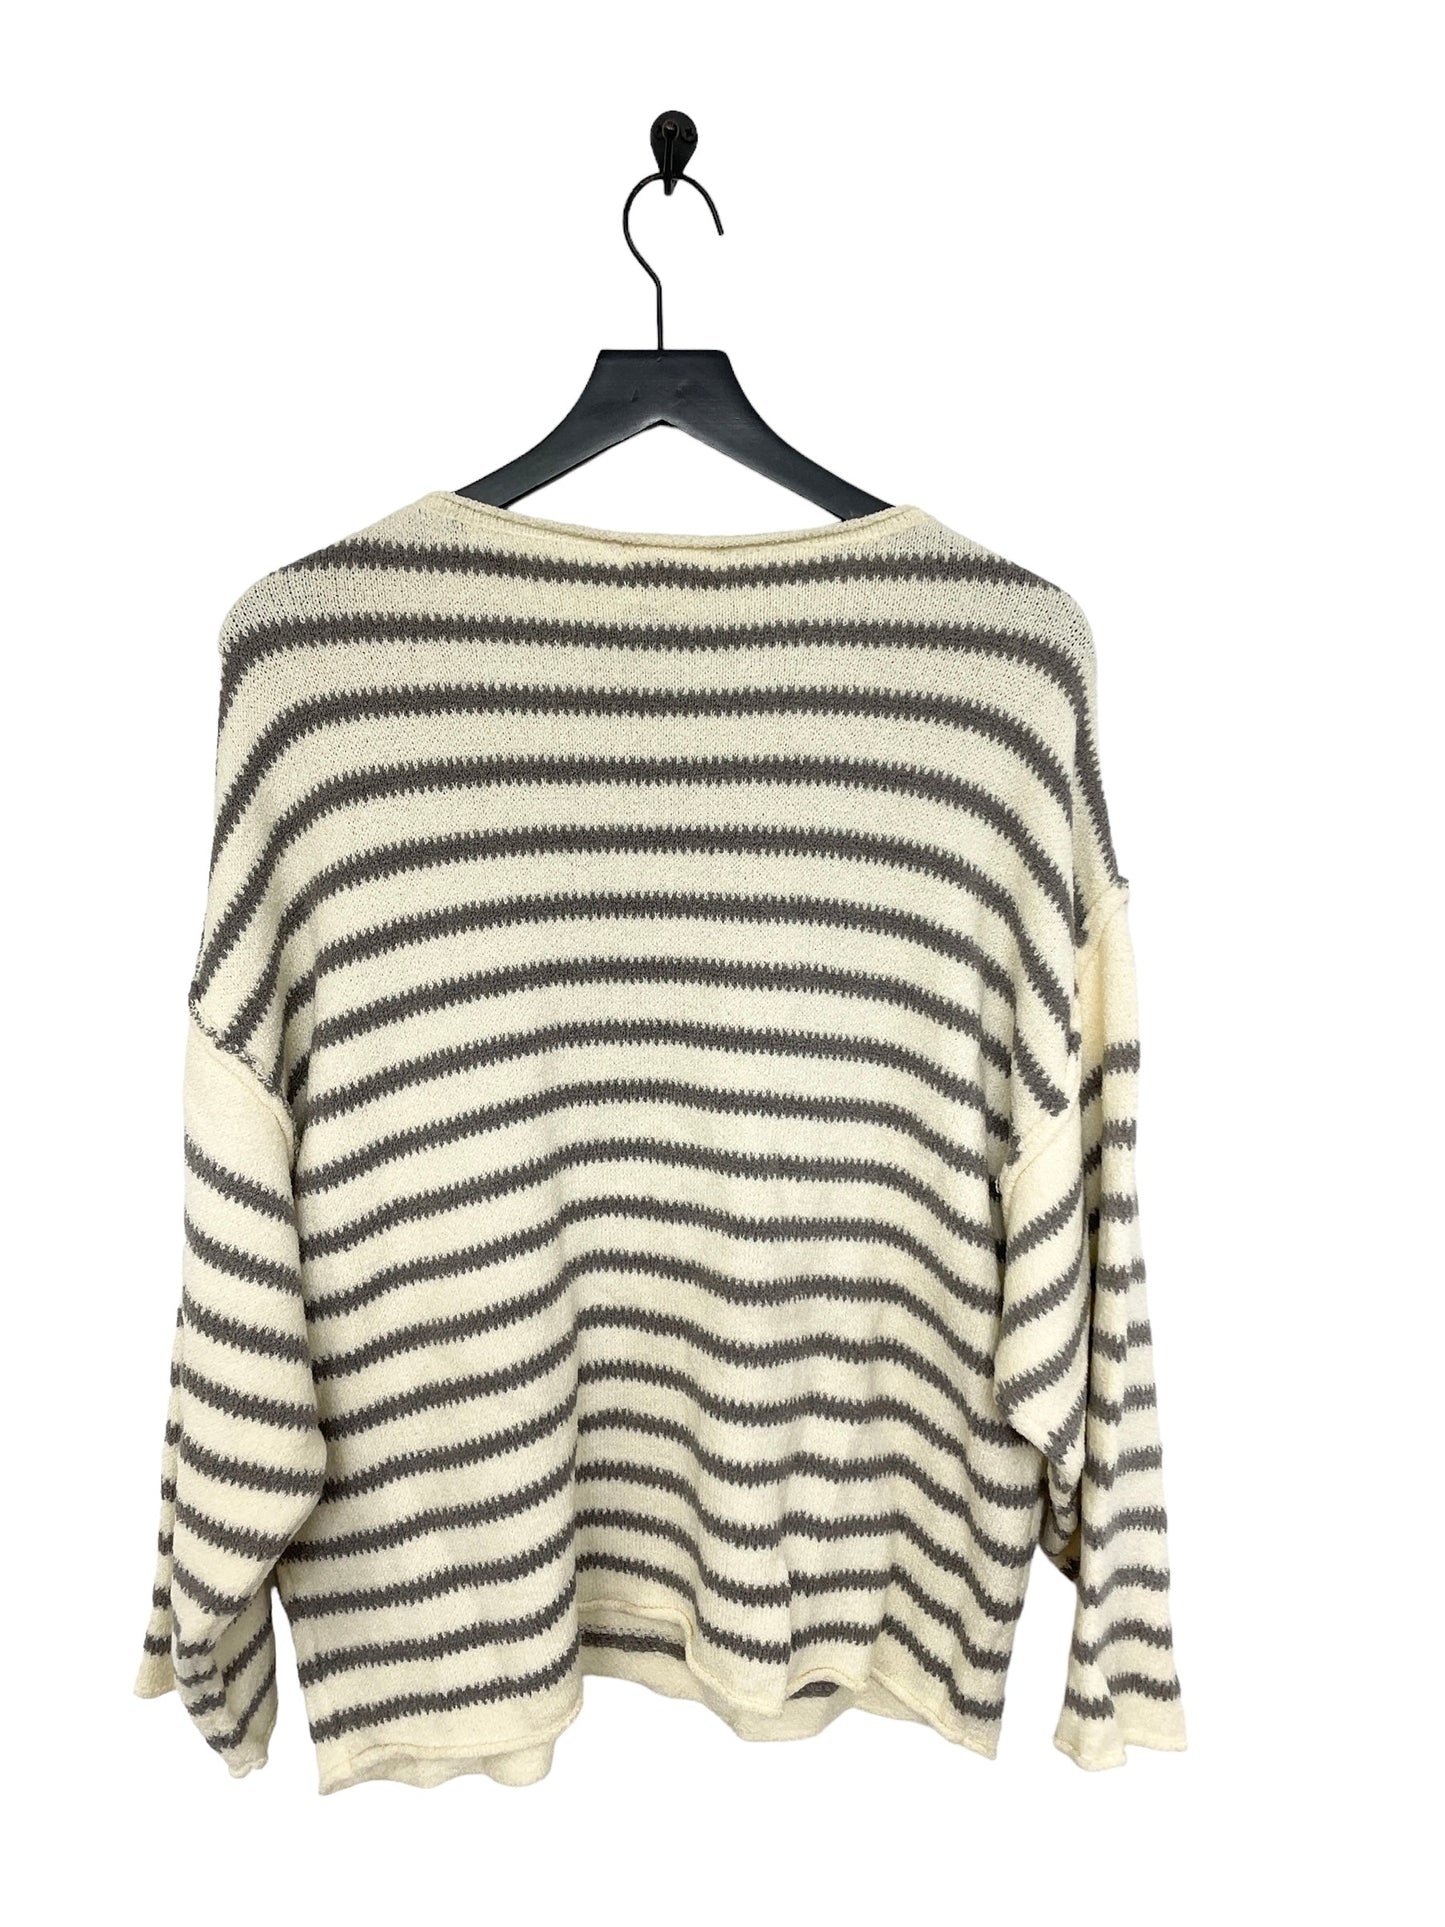 Striped Sweater Promesa, Size S